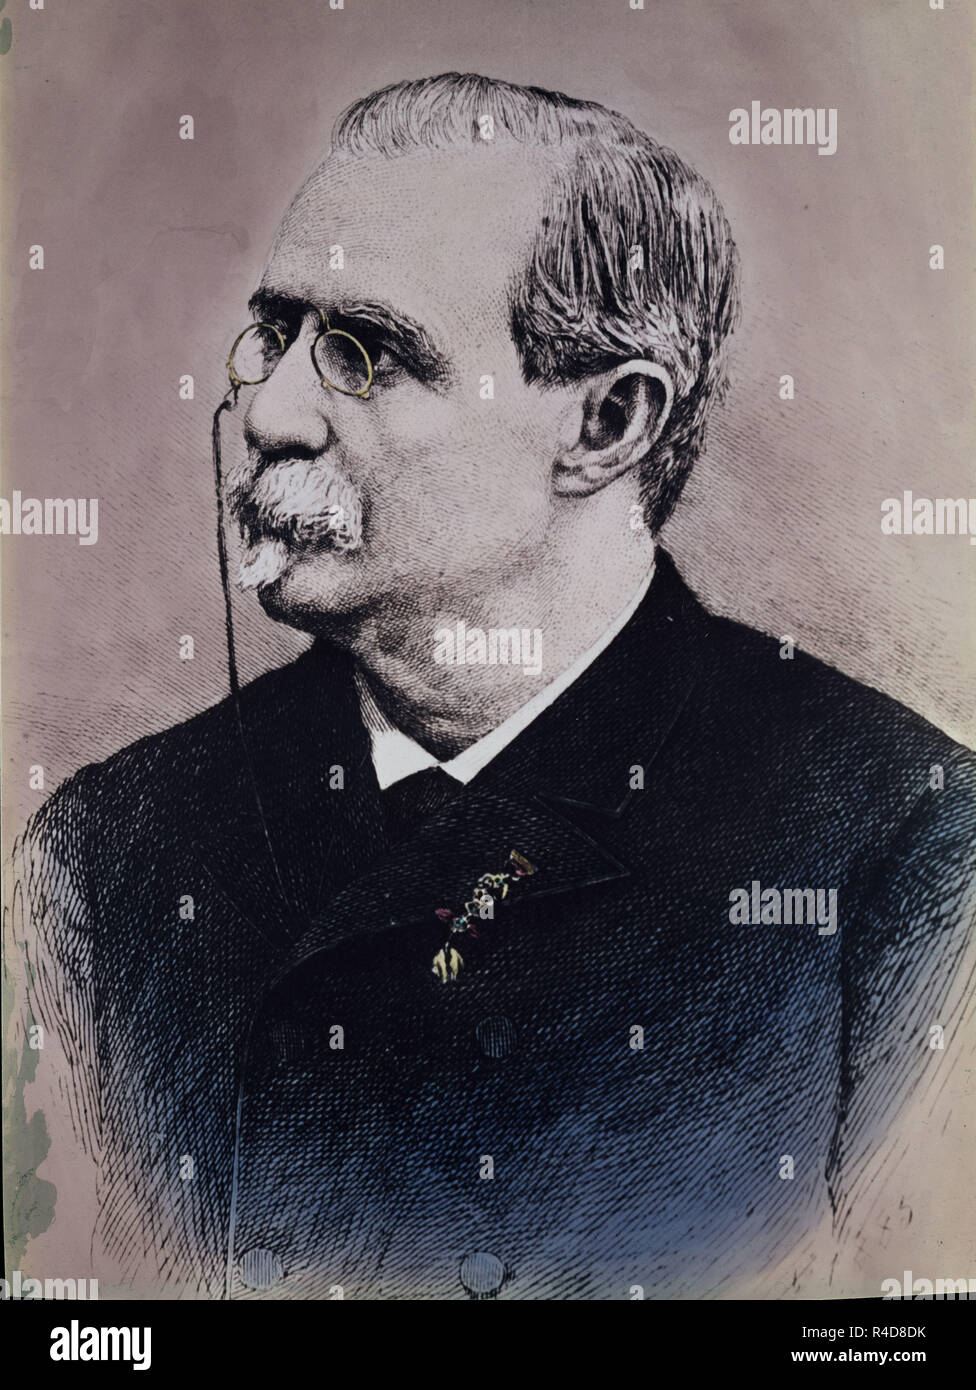 Portrait d'Antonio Cánovas del Castillo (1828-1897), historien et homme politique espagnol.. Madrid, collection privée. Emplacement : collection privée. MADRID. L'ESPAGNE. Banque D'Images